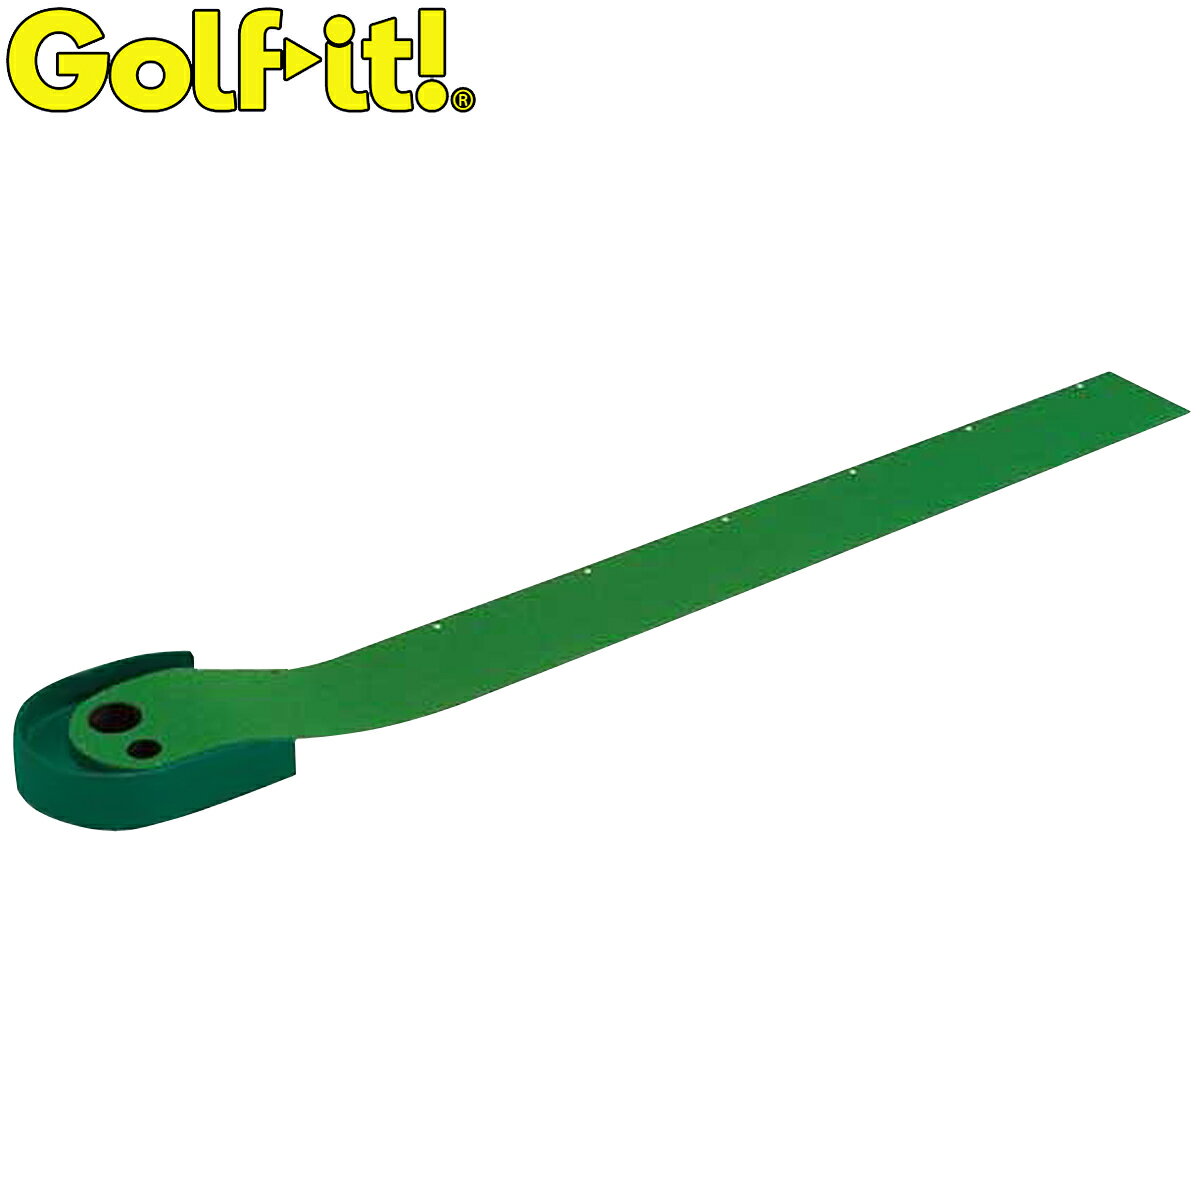 Golfit ゴルフイット ライト正規品 ワンピンパターマット 「SP-031」 「M-486」 「ゴルフパター練習用品」